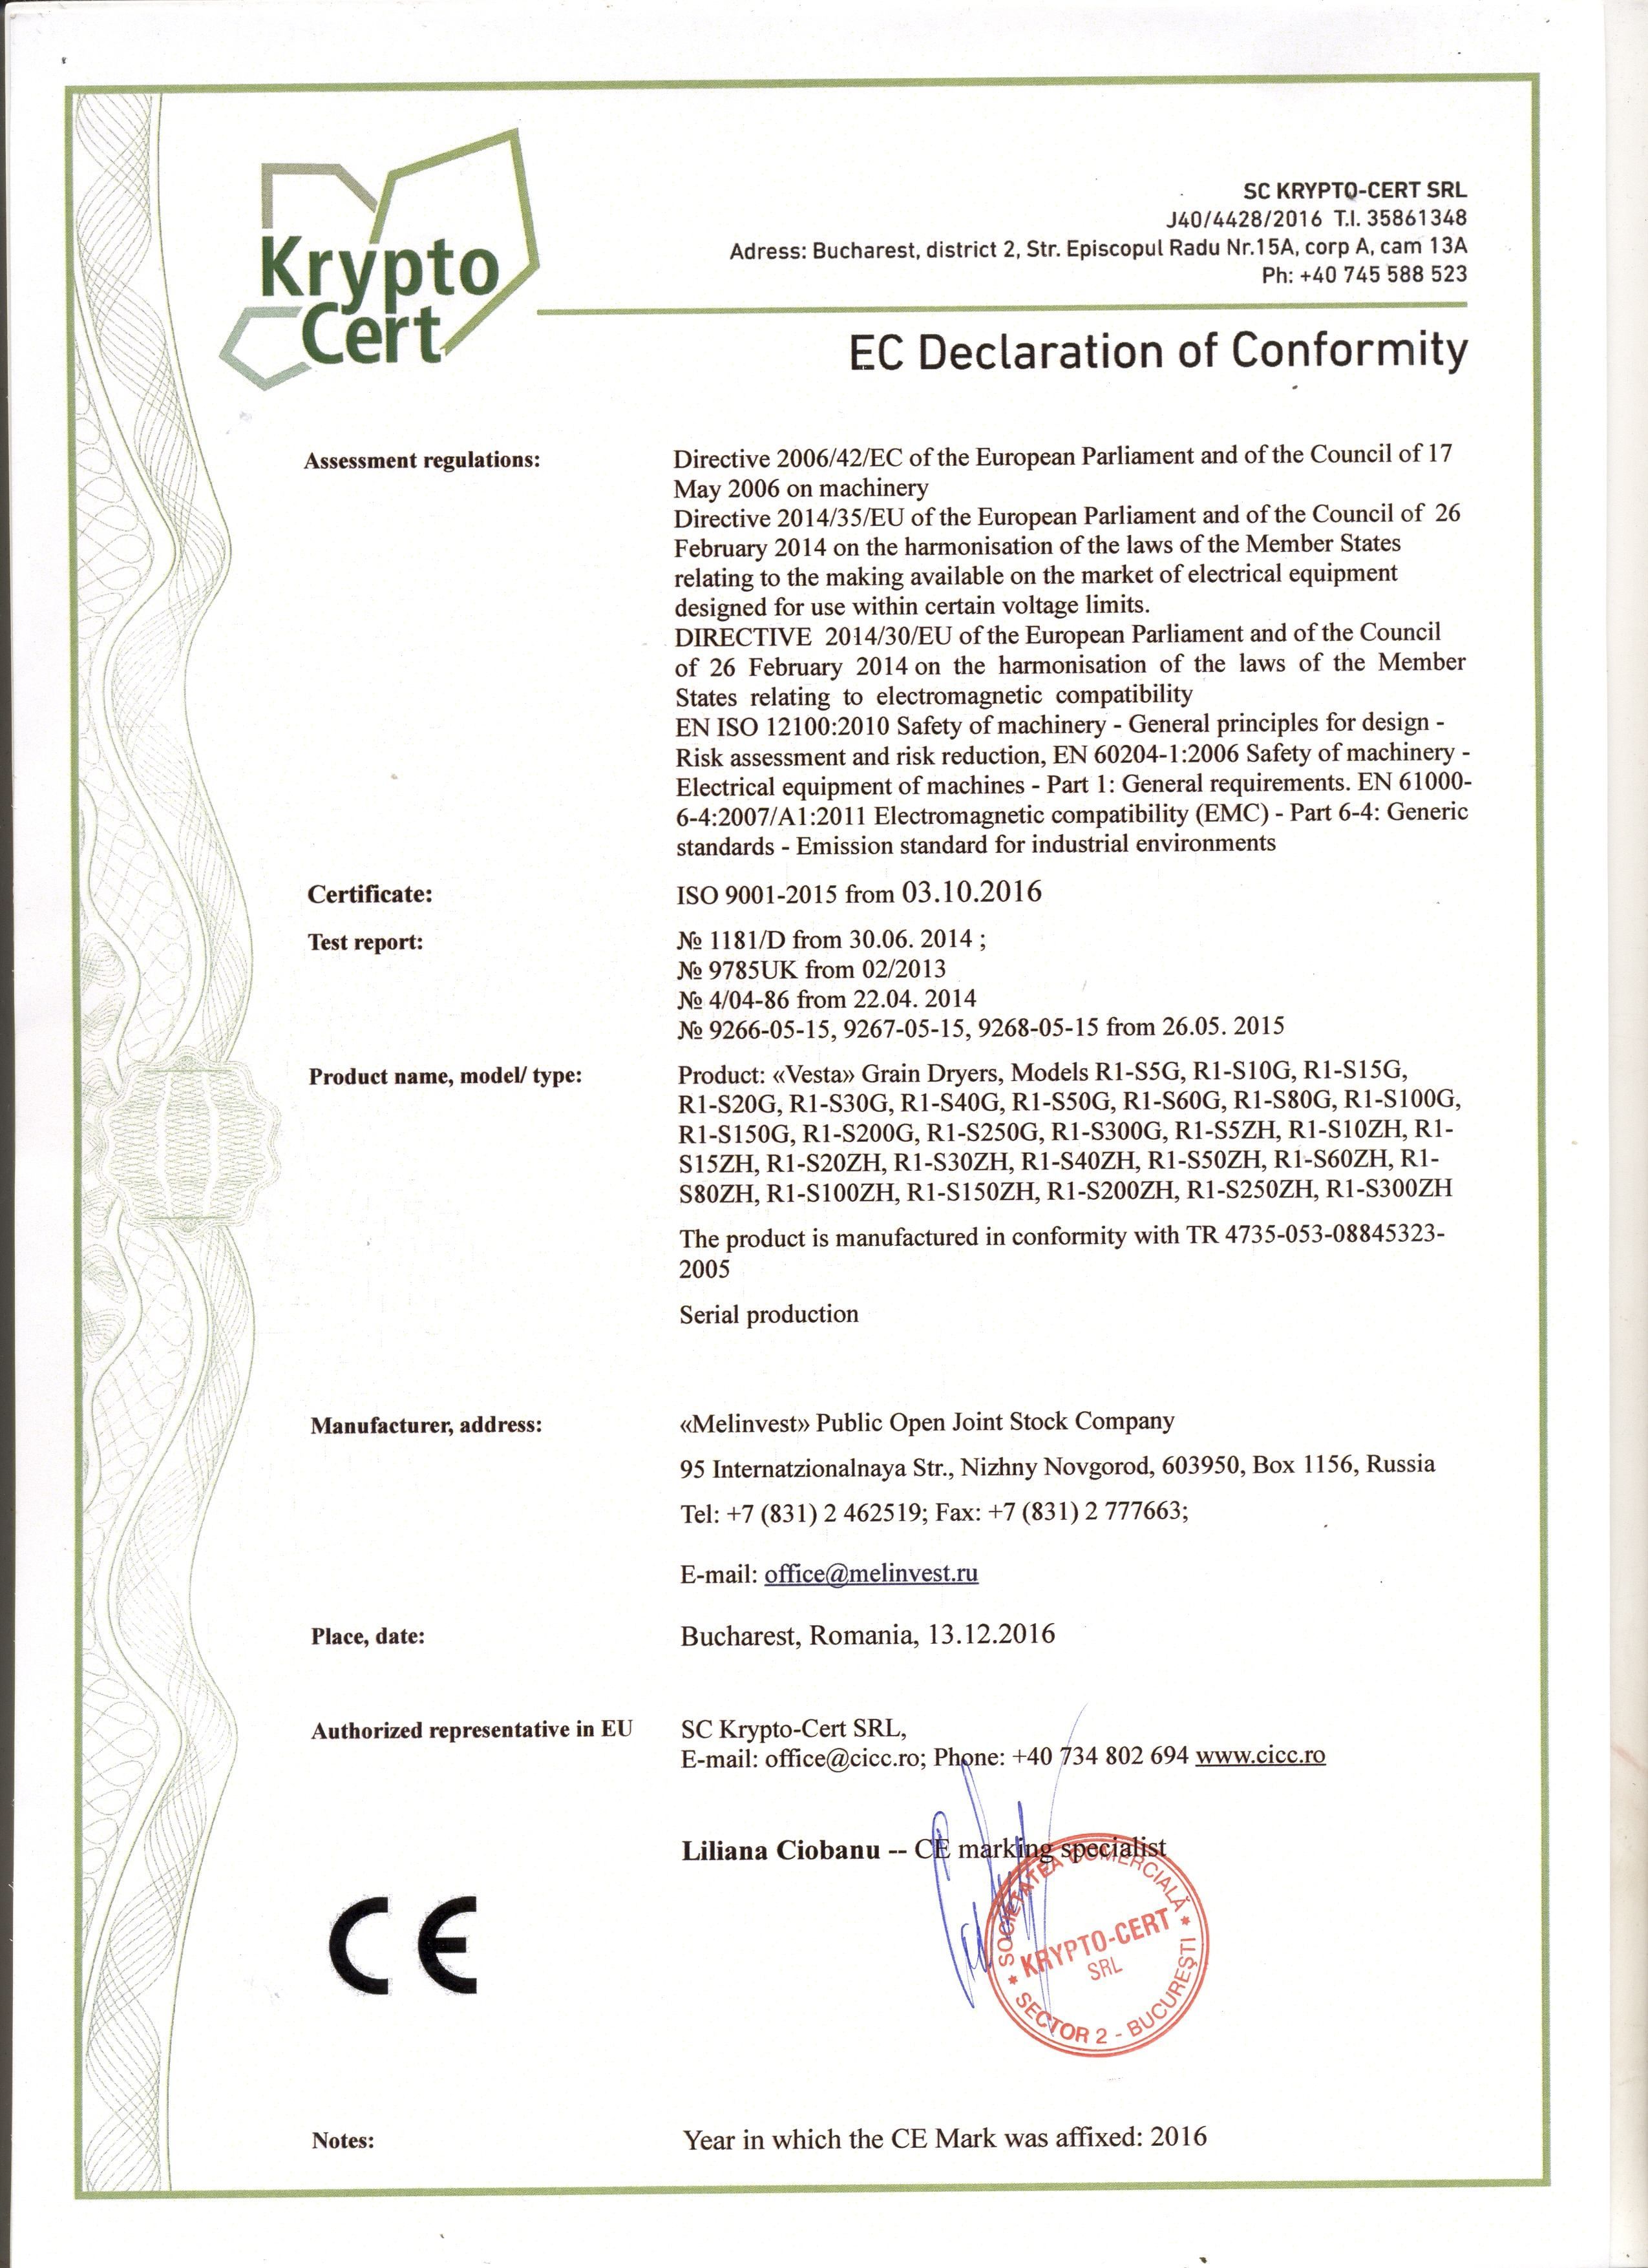 Зерносушилка Vesta получила сертификат соответствия Европейского союза